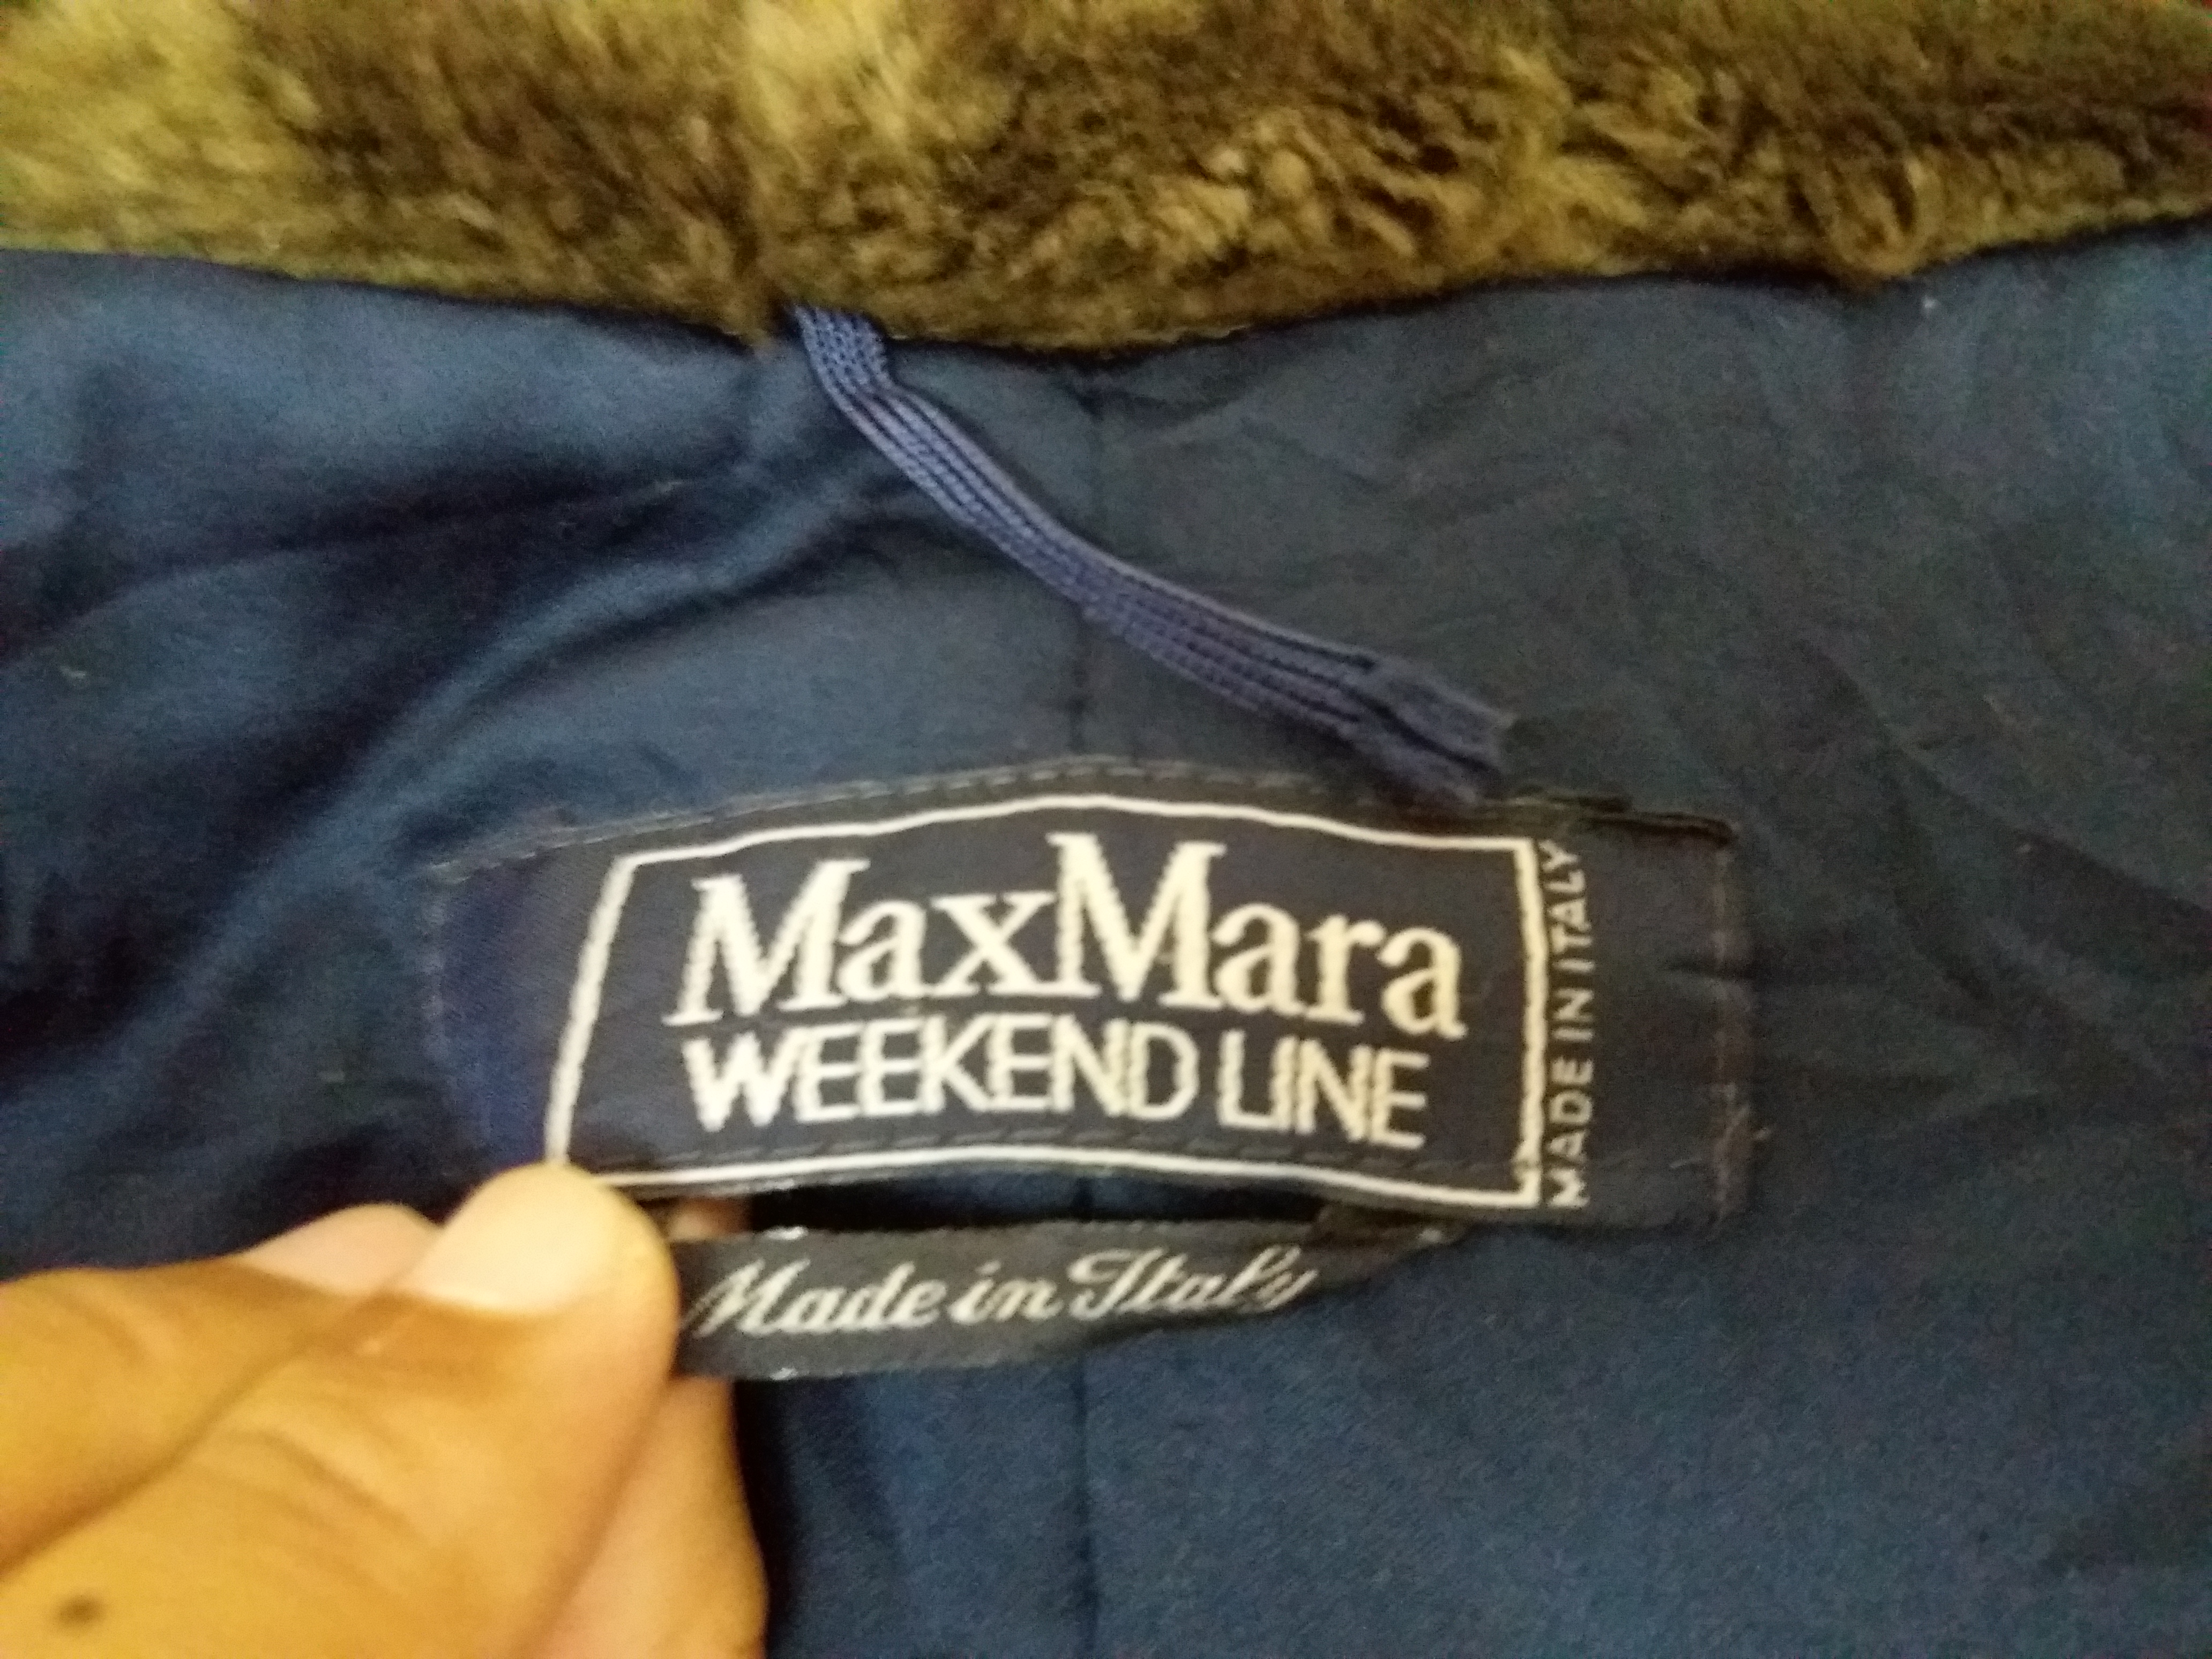 Max Mara Weekend Line hoodies jacket made in italy - 6